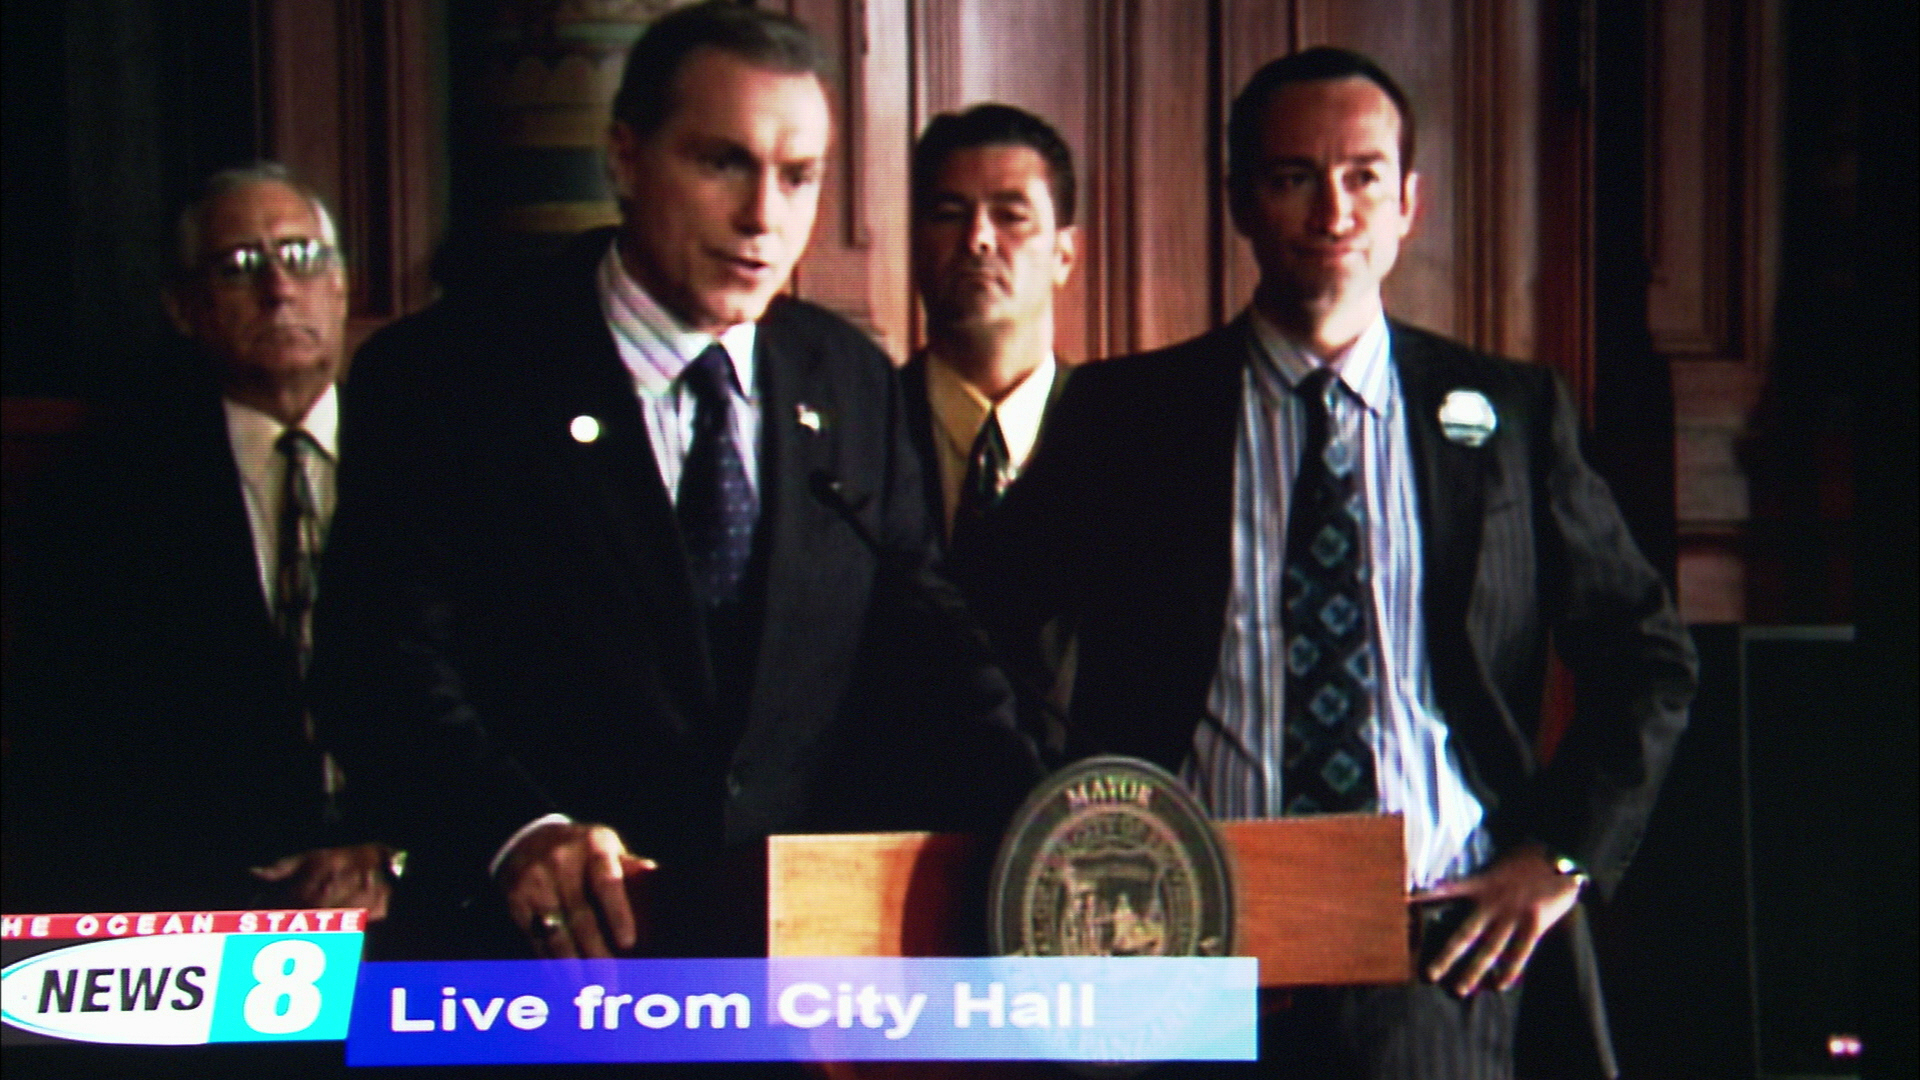 Showtime's BROTHERHOOD as Mayor Frank Panzerella